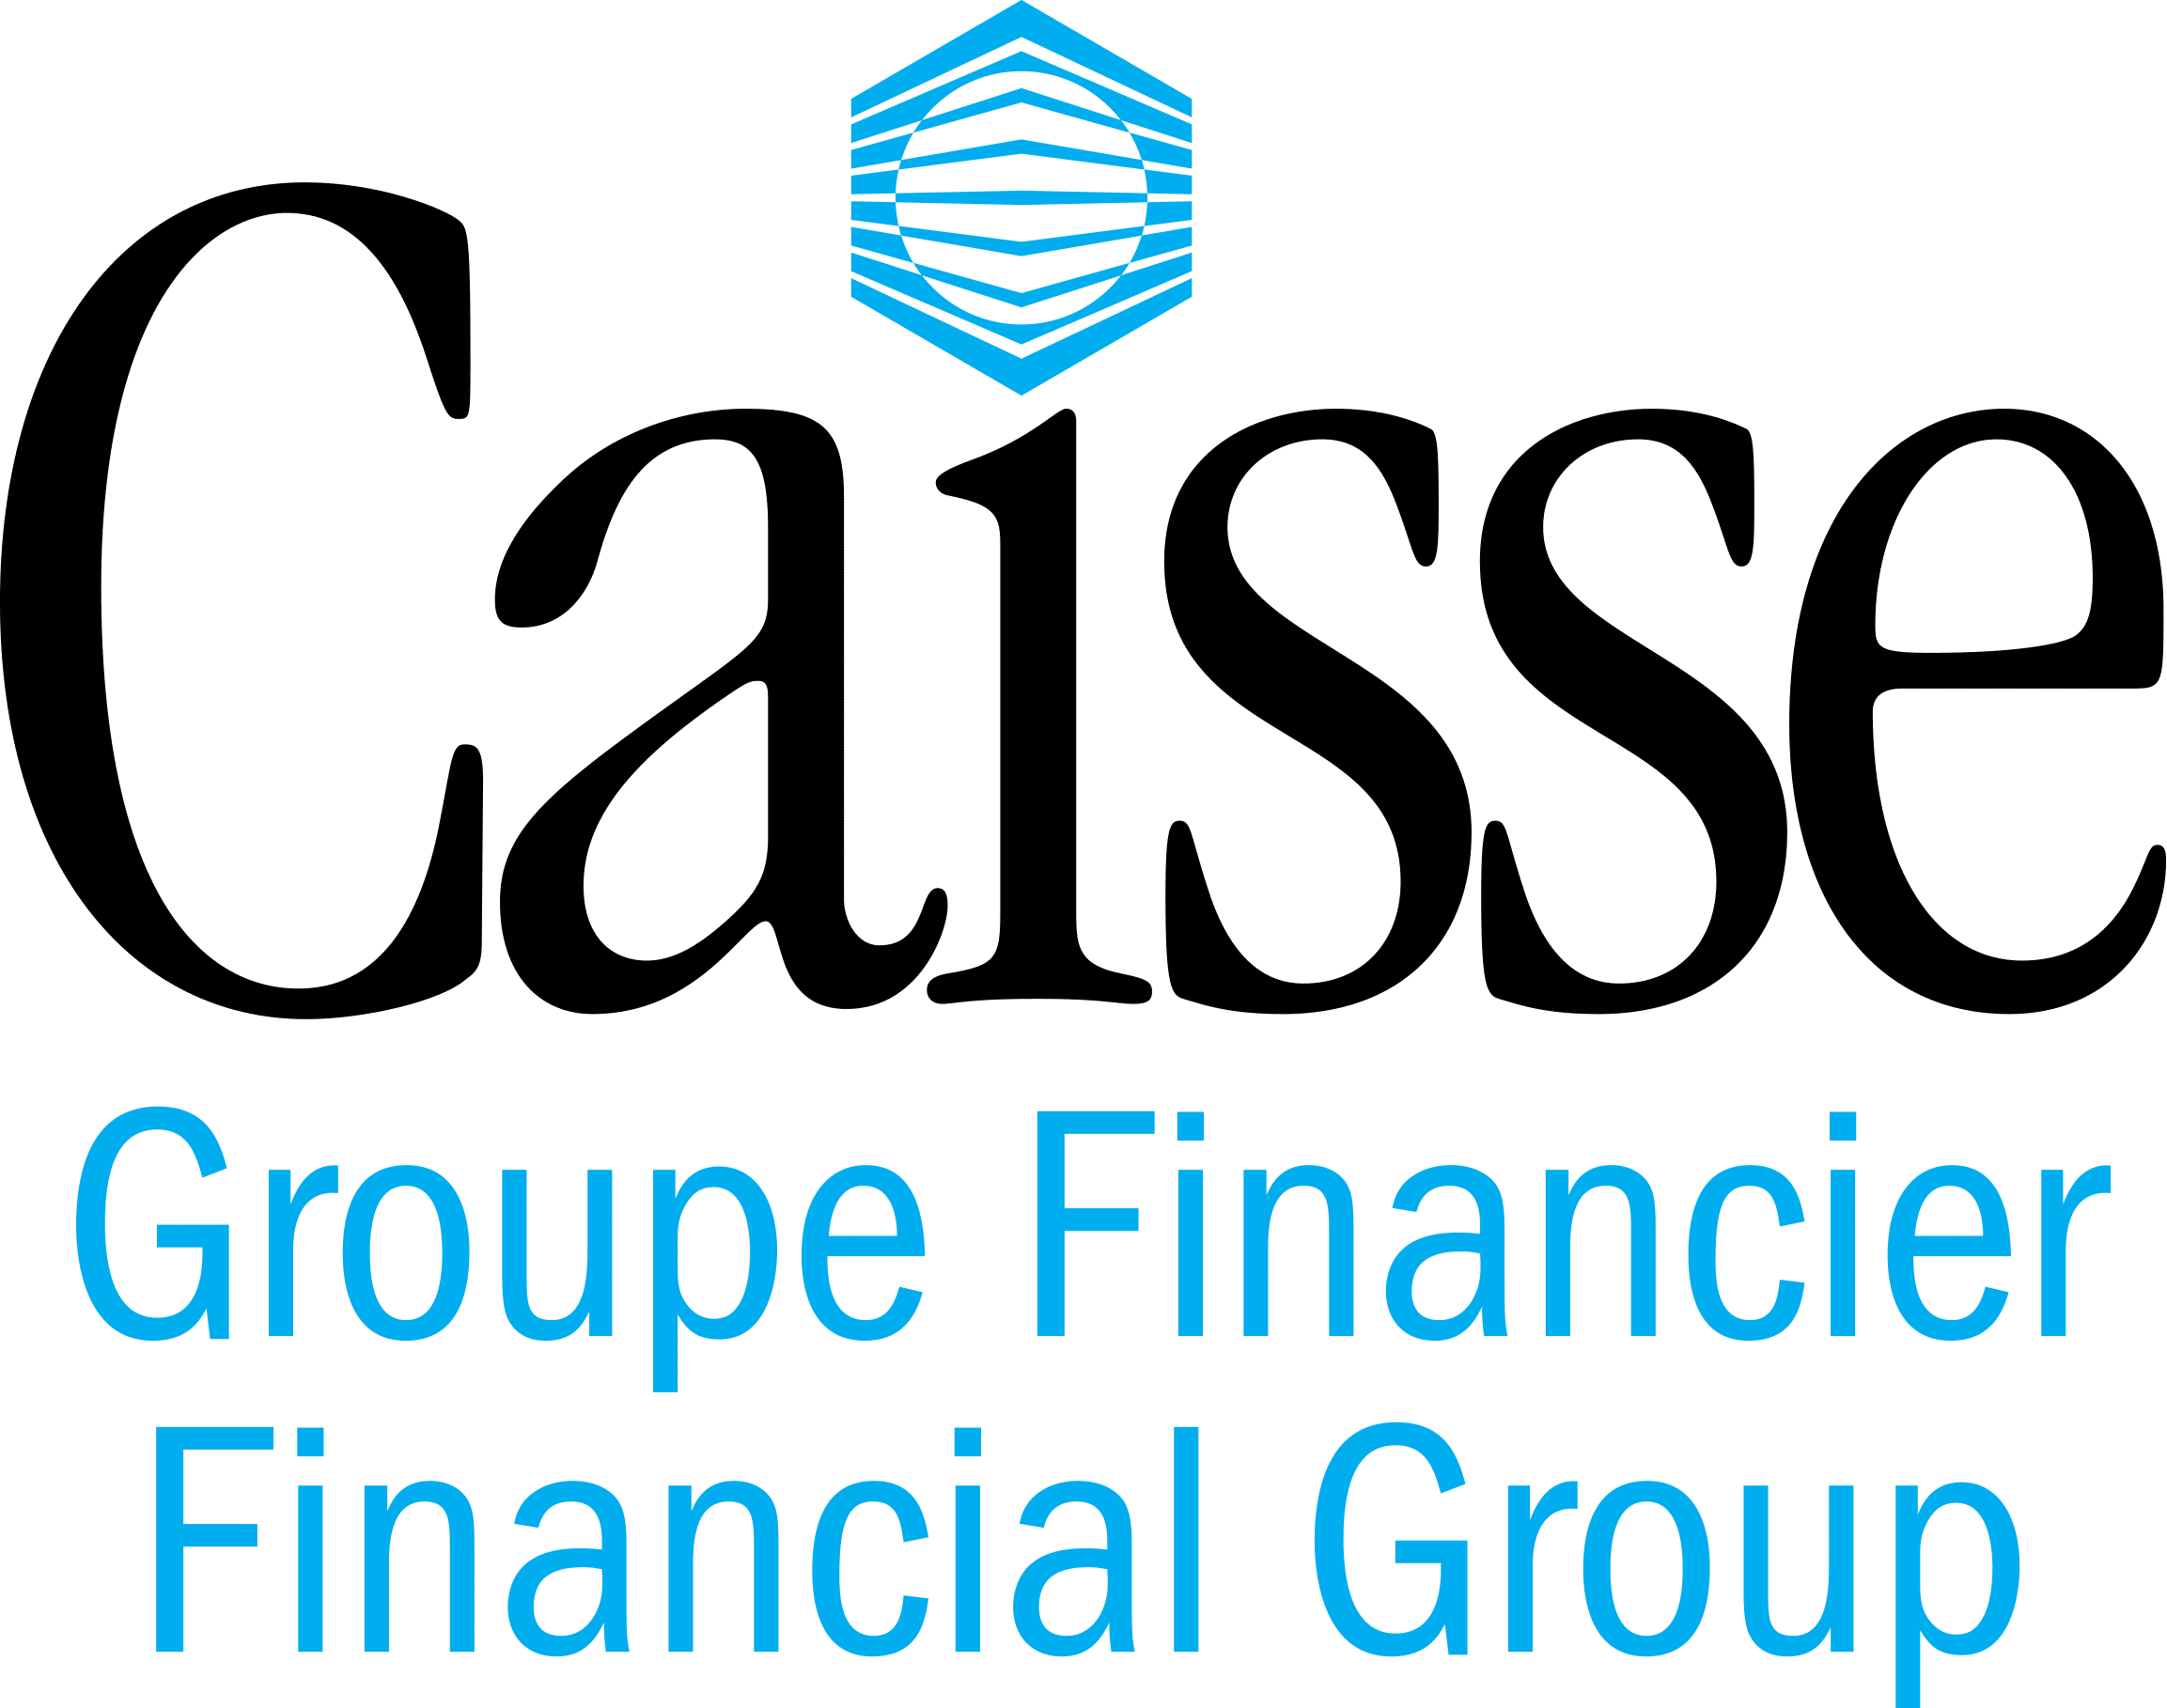 Caisse Groupe Financier/Caisse Financial Group